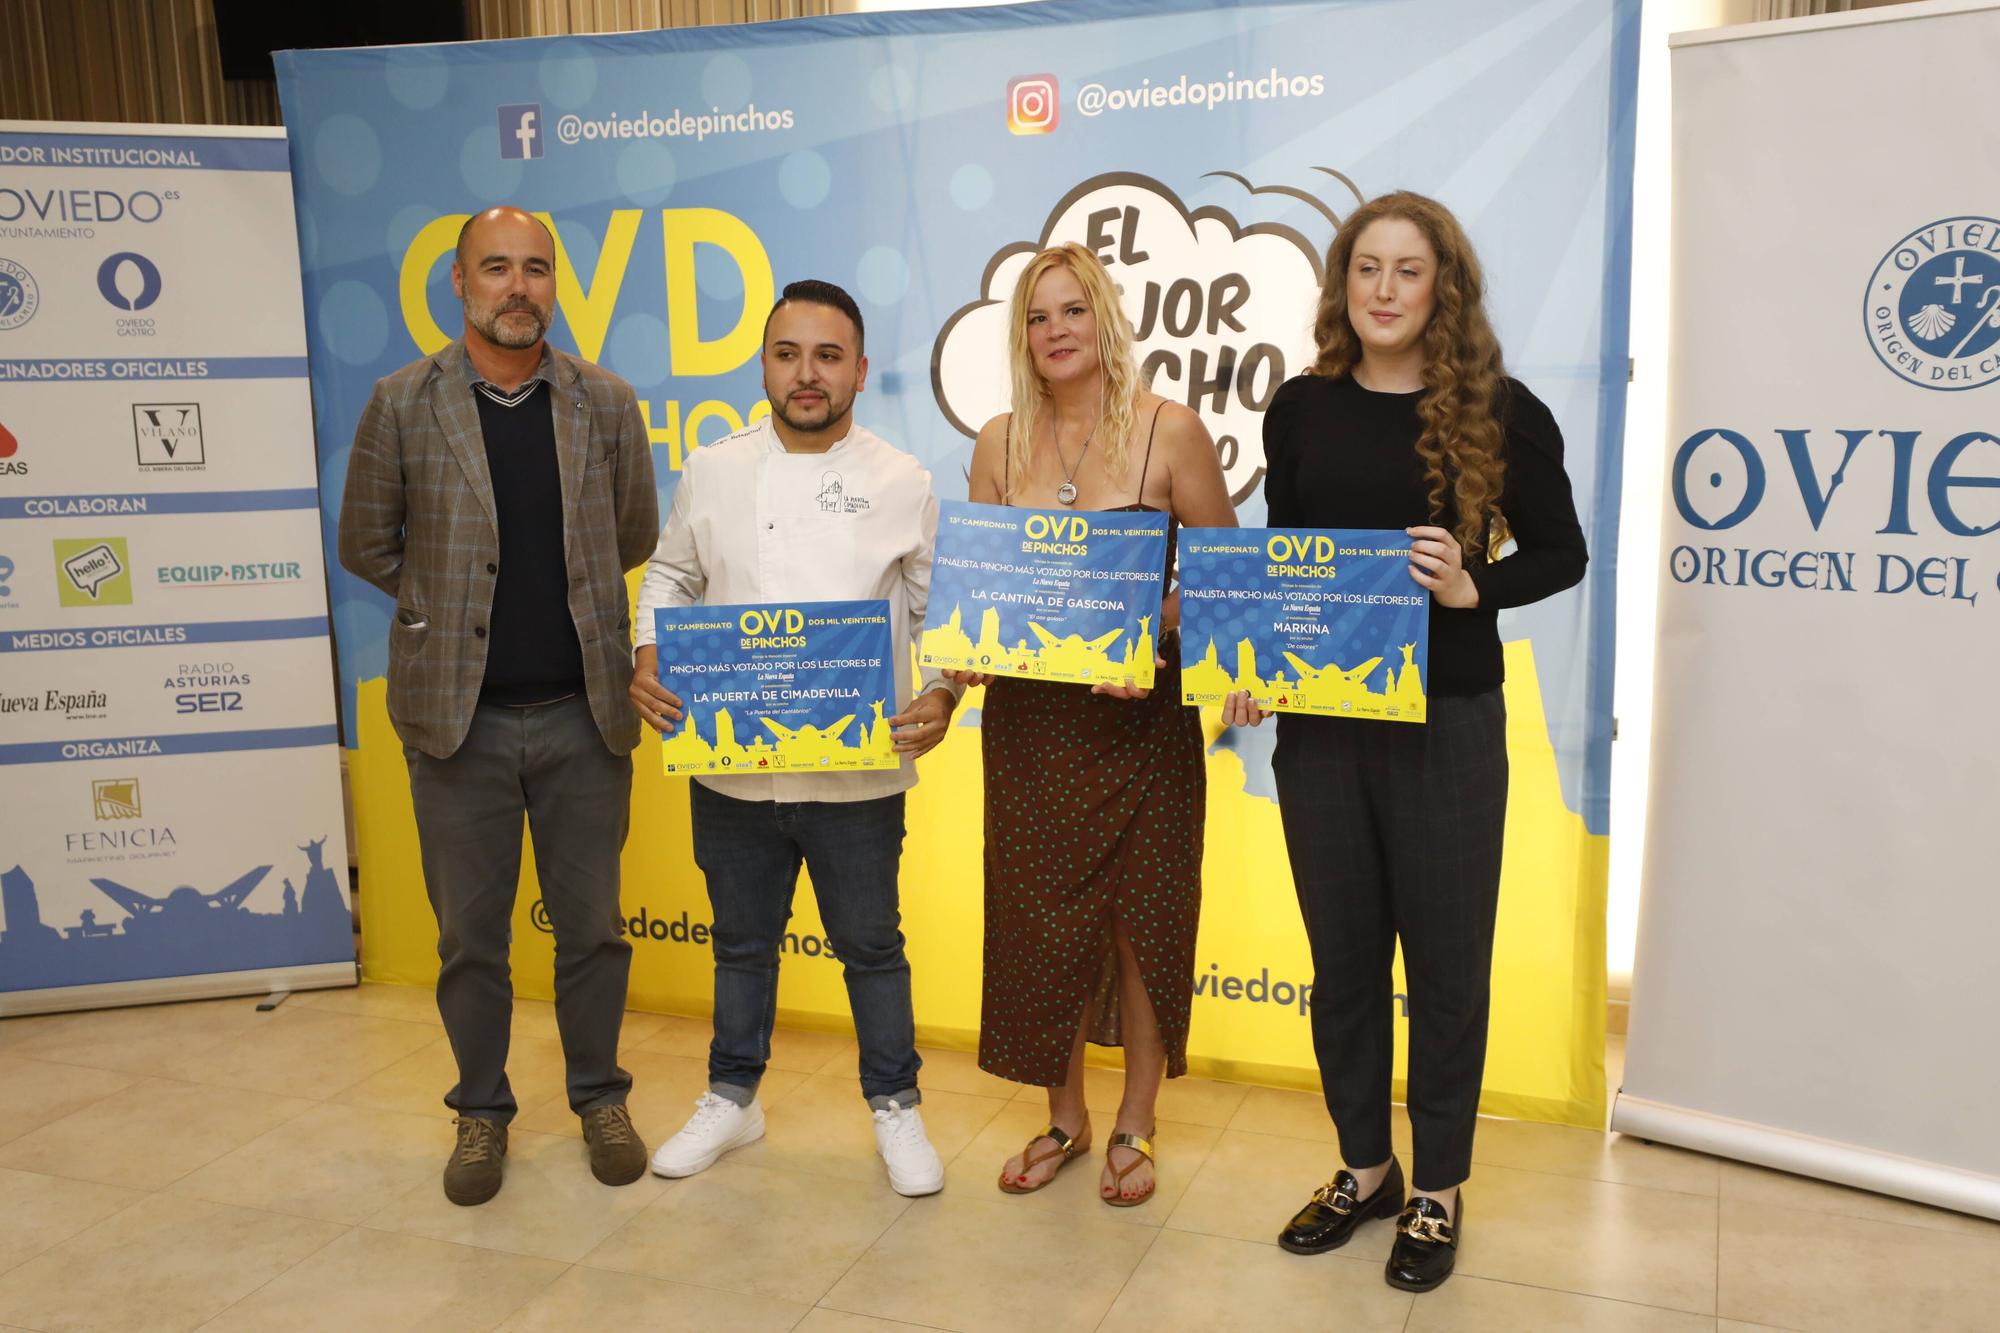 En imágenes: Entrega de los Premios del XIII Campeonato de Pinchos de Oviedo